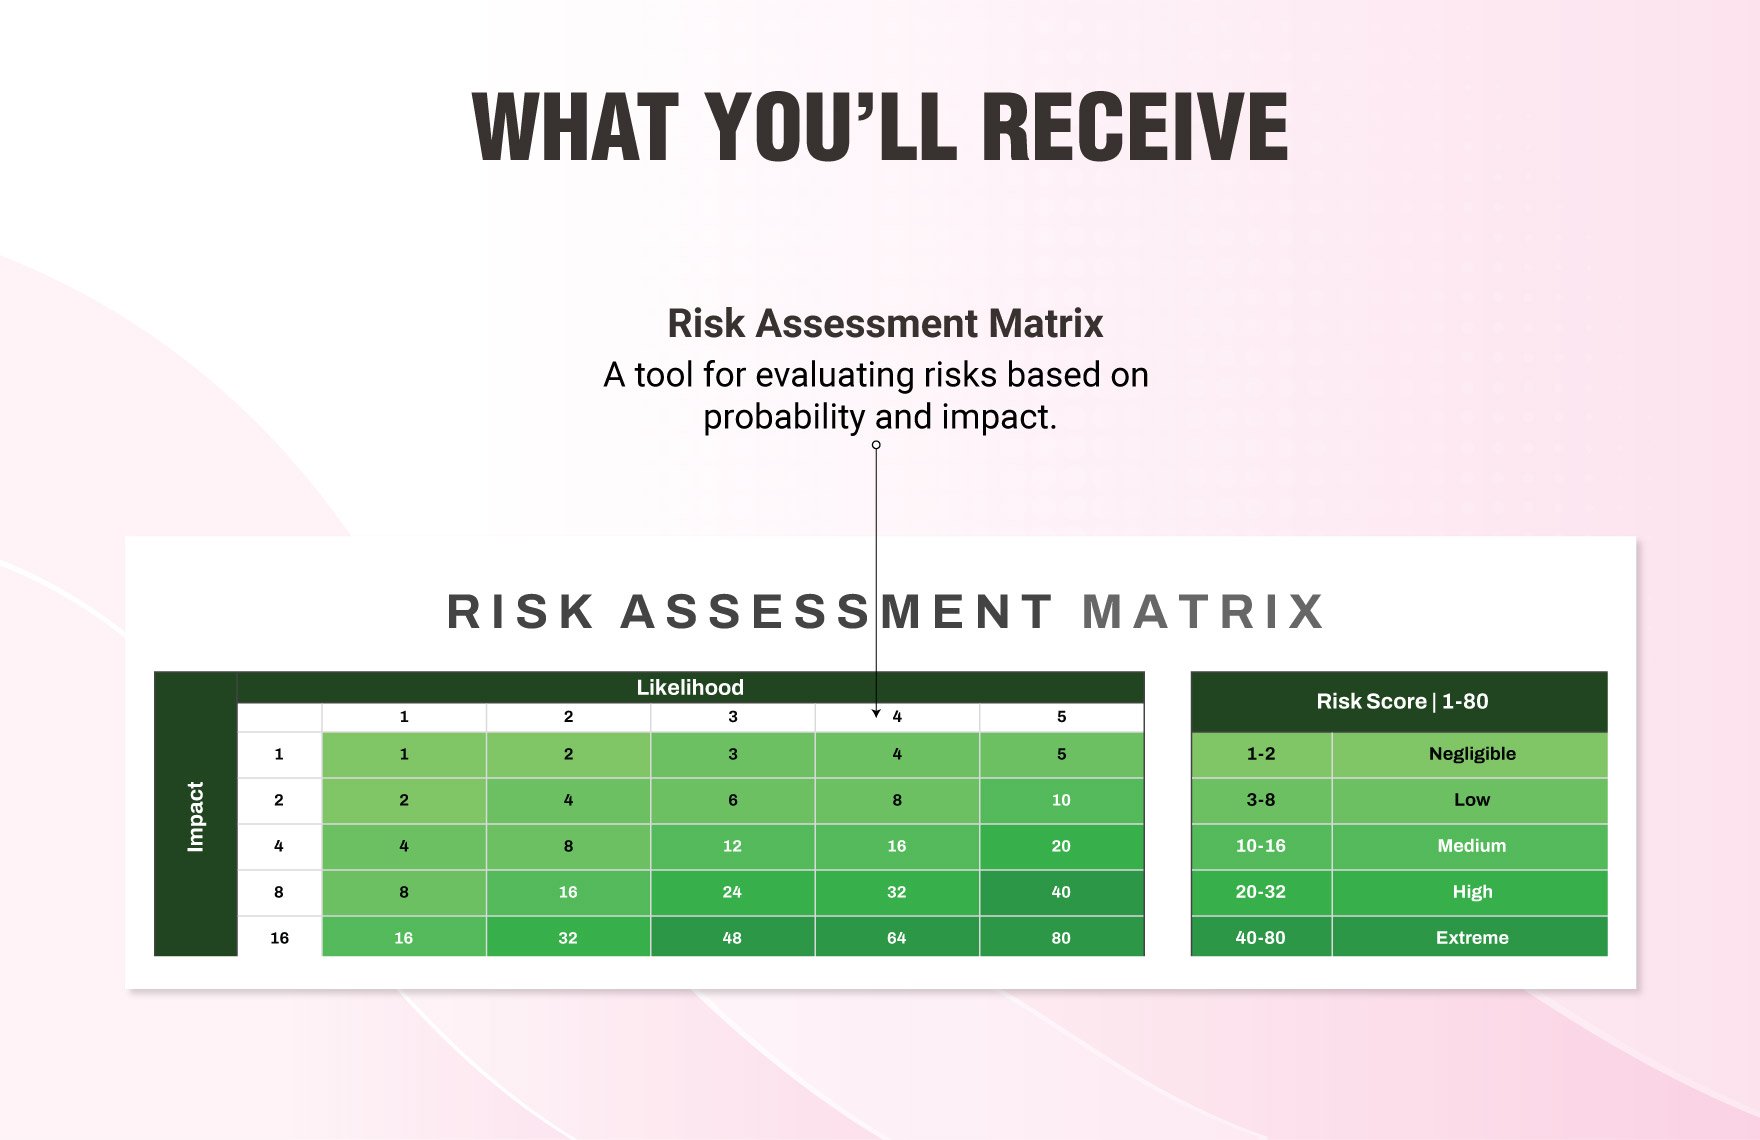 Account Risk Assessment Matrix Template